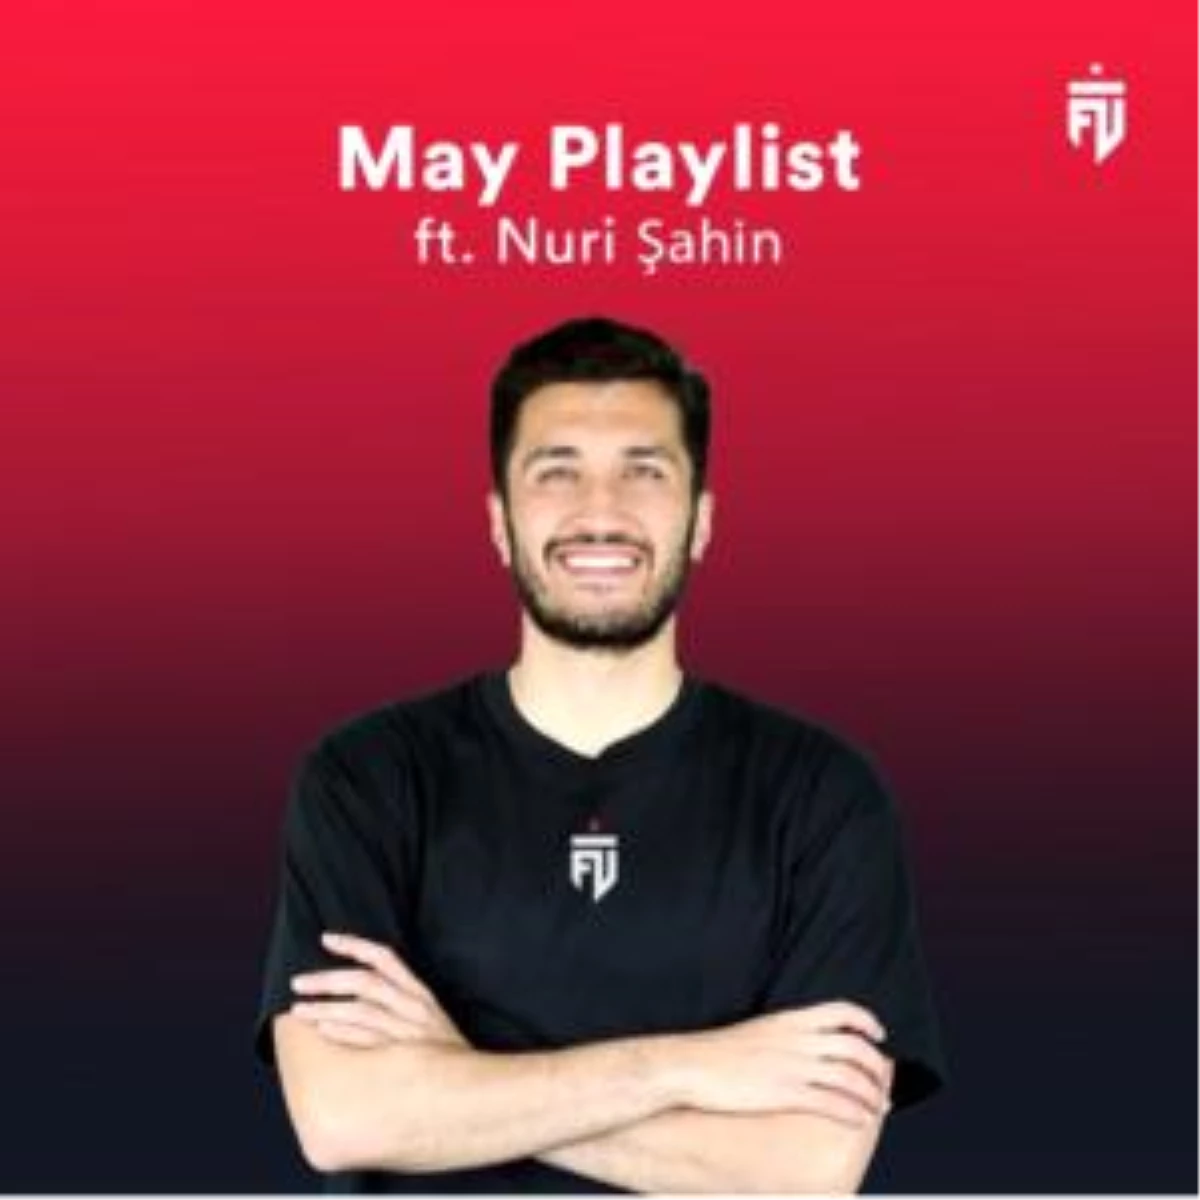 Futbolist May Playlist yayında!